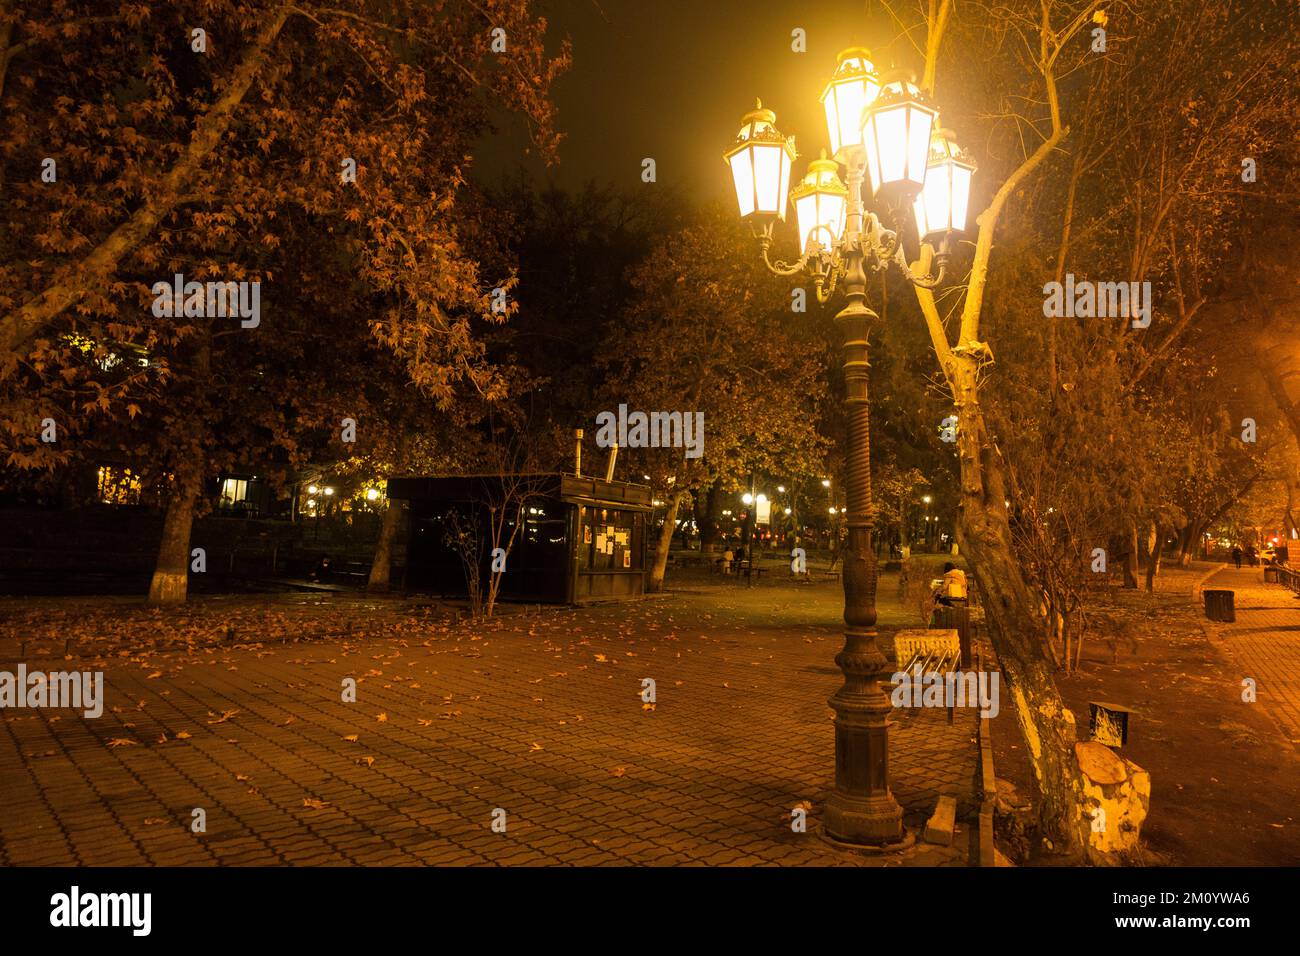 Lanterne de rue lumineuse dans un parc en soirée. Poteau lumineux avec de nombreuses lampes. Banque D'Images